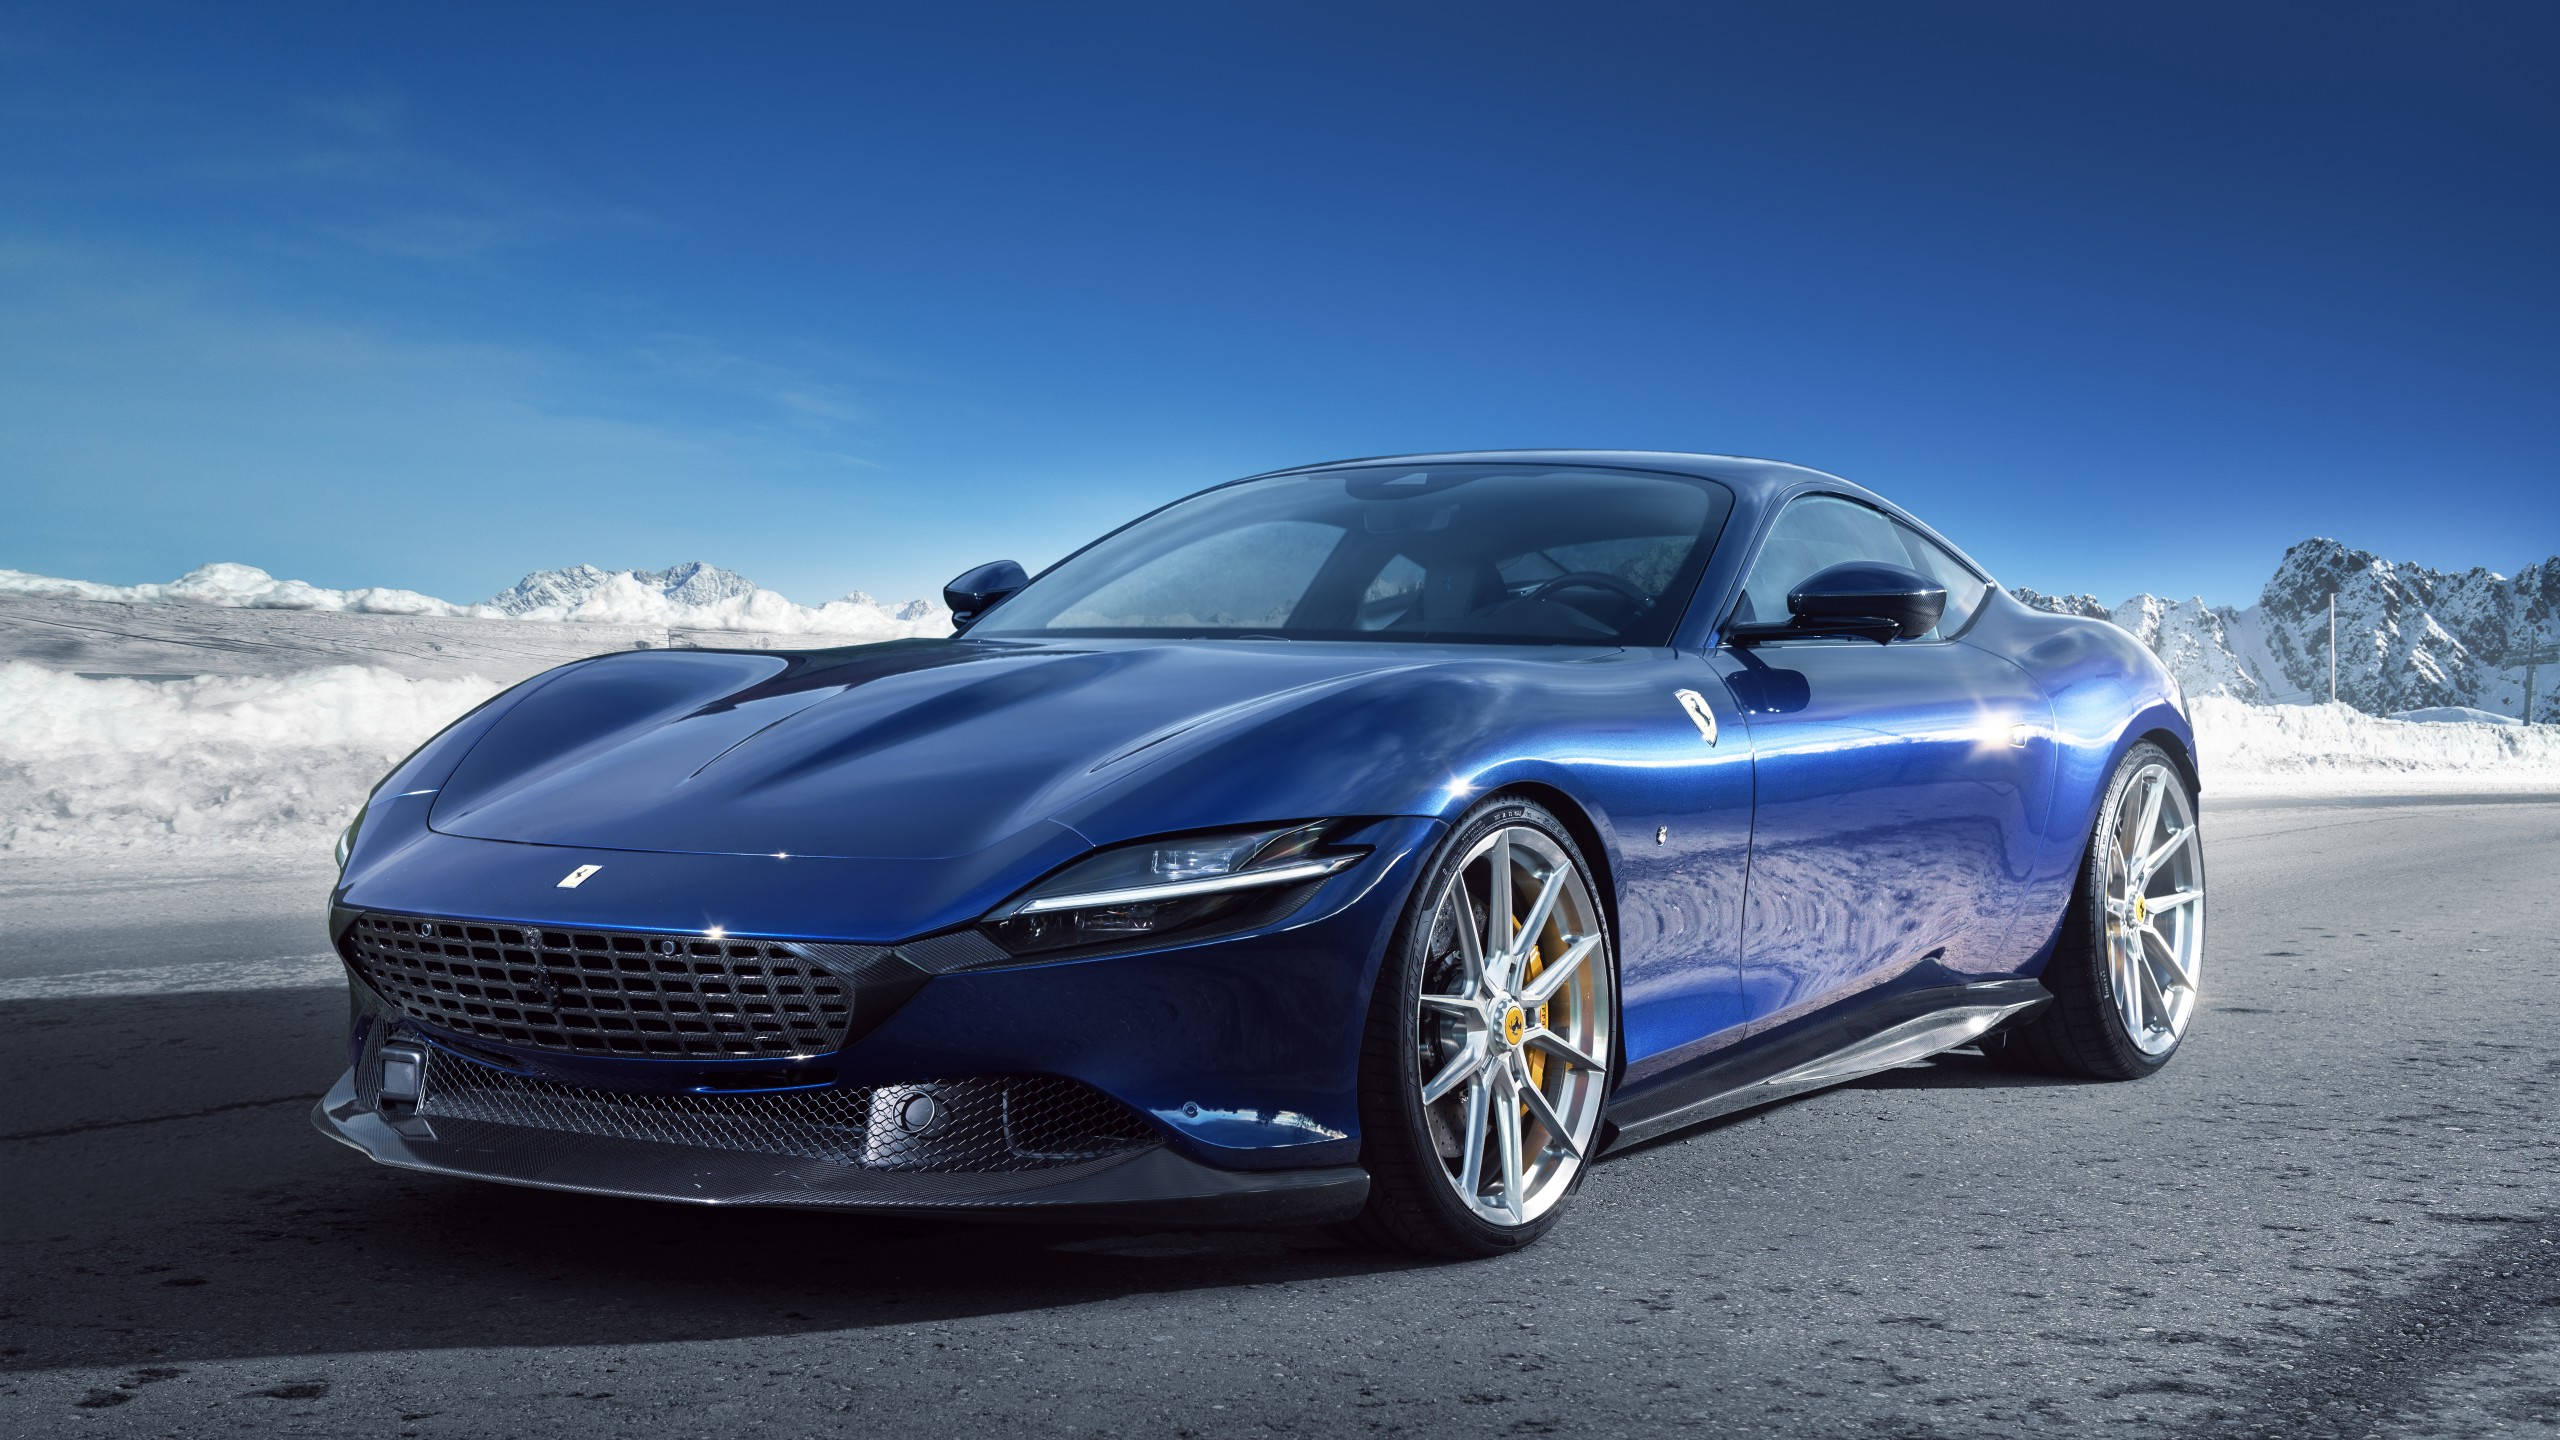 Download 2560x1440 Car Blue Ferrari Roma Wallpaper 